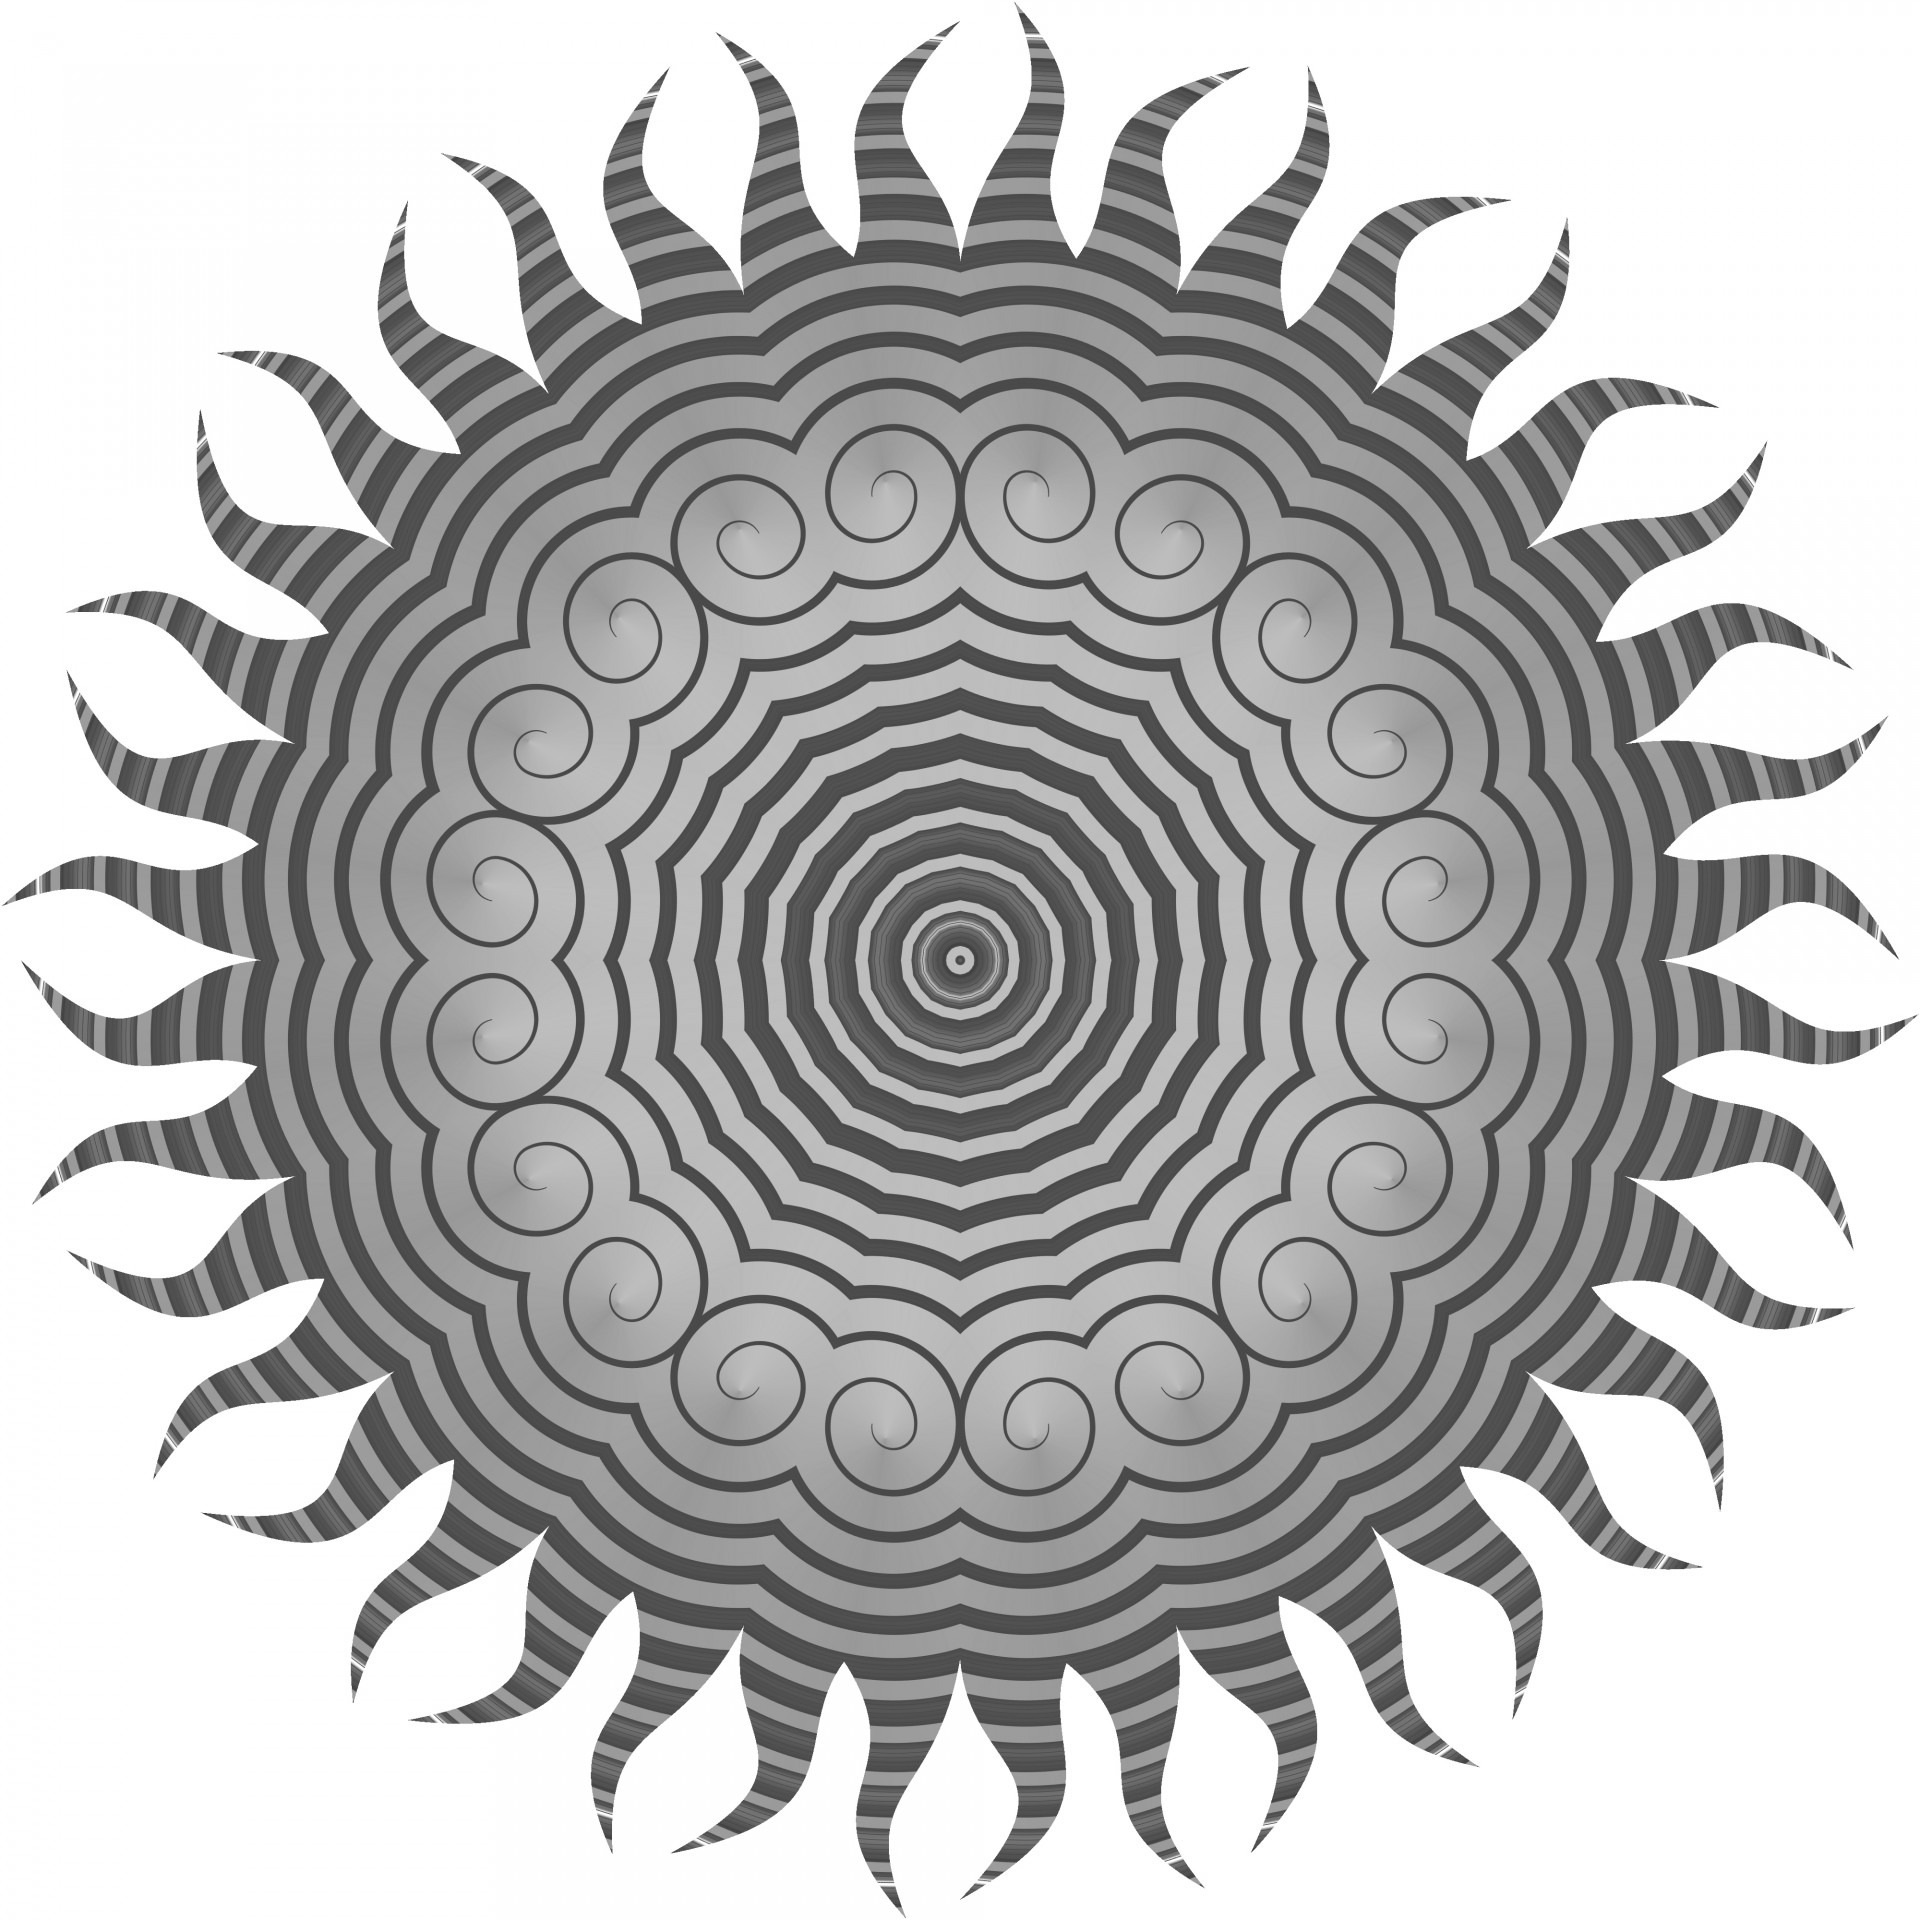 Grey Spiral Sun